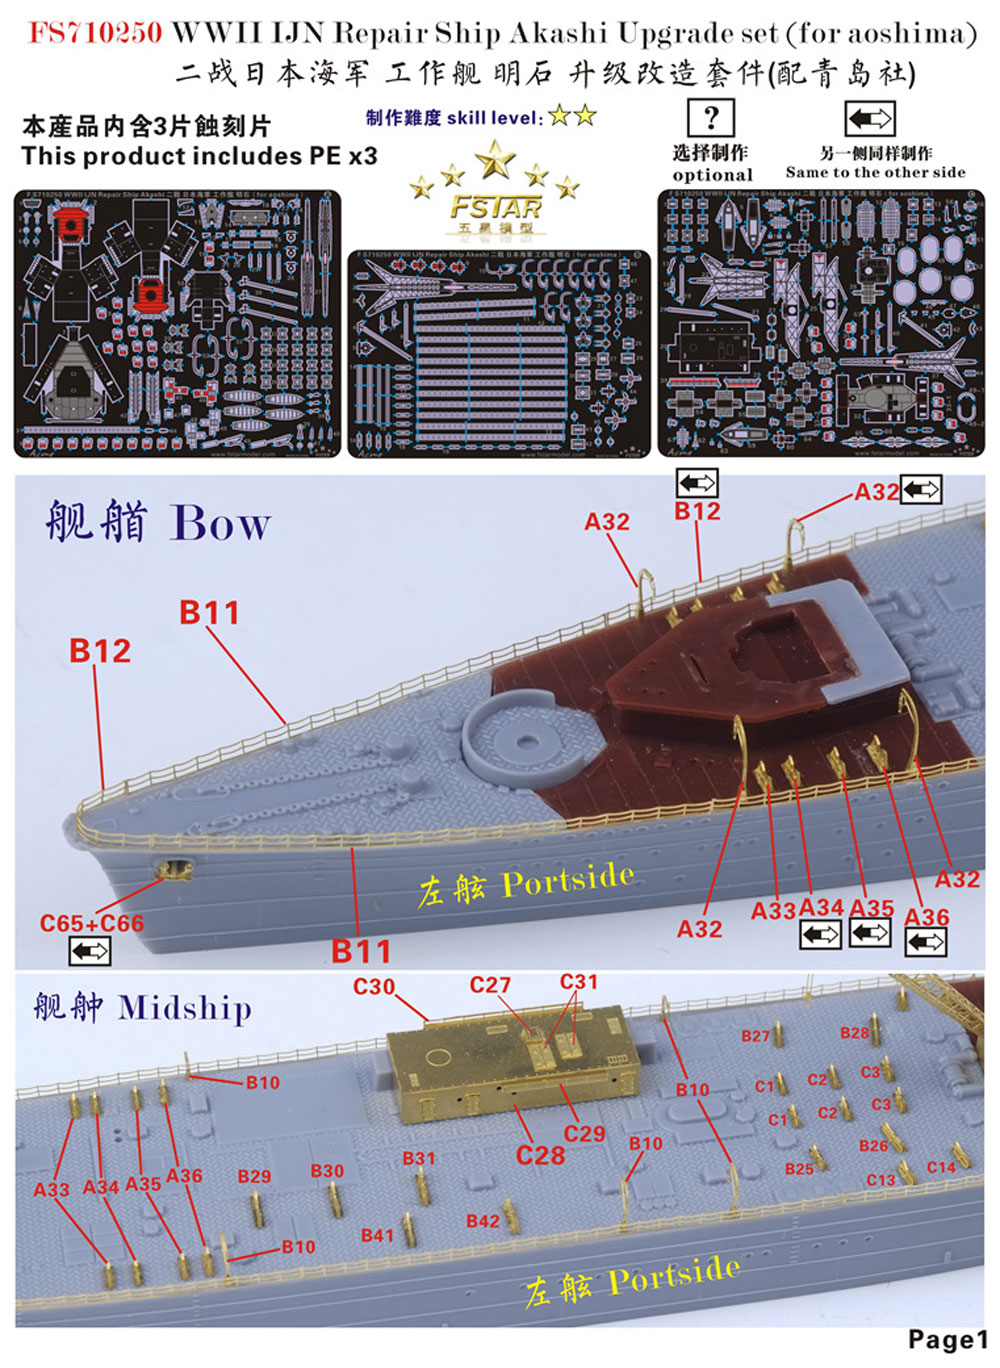 日本海軍 工作艦 明石 アップグレードセット (アオシマ用) エッチング (ファイブスターモデル 1/700 艦船用 アップグレード エッチング No.FS710250) 商品画像_1